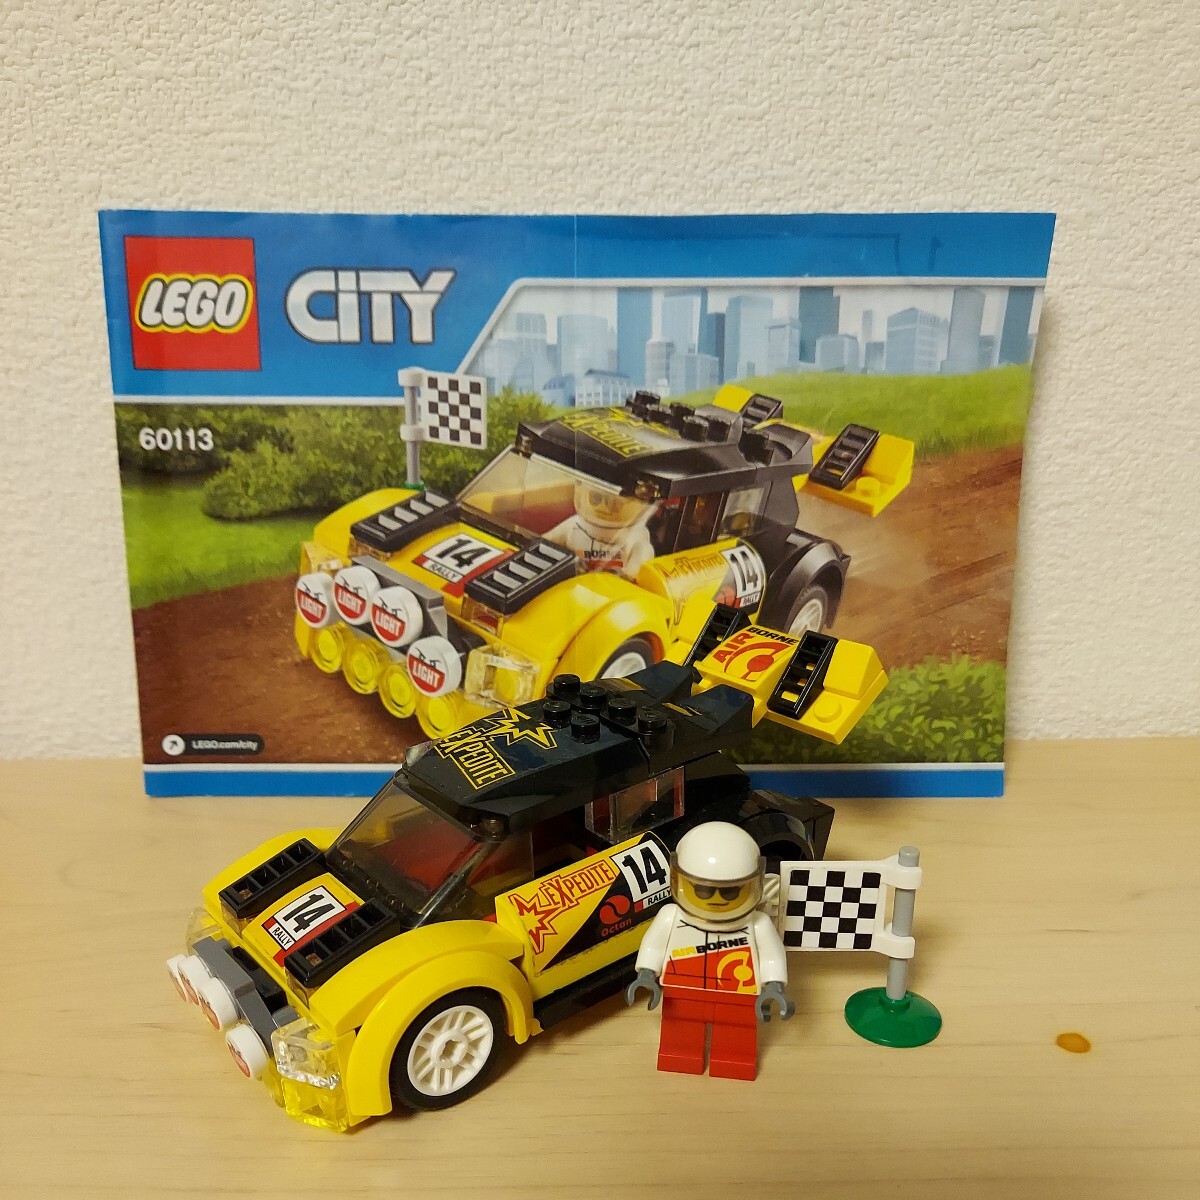 LEGO レゴ シティ CITY 絶版 60113 ラリーカー レーシングカー ラリー スポーツカー 廃盤 昔のレゴ 車_画像1